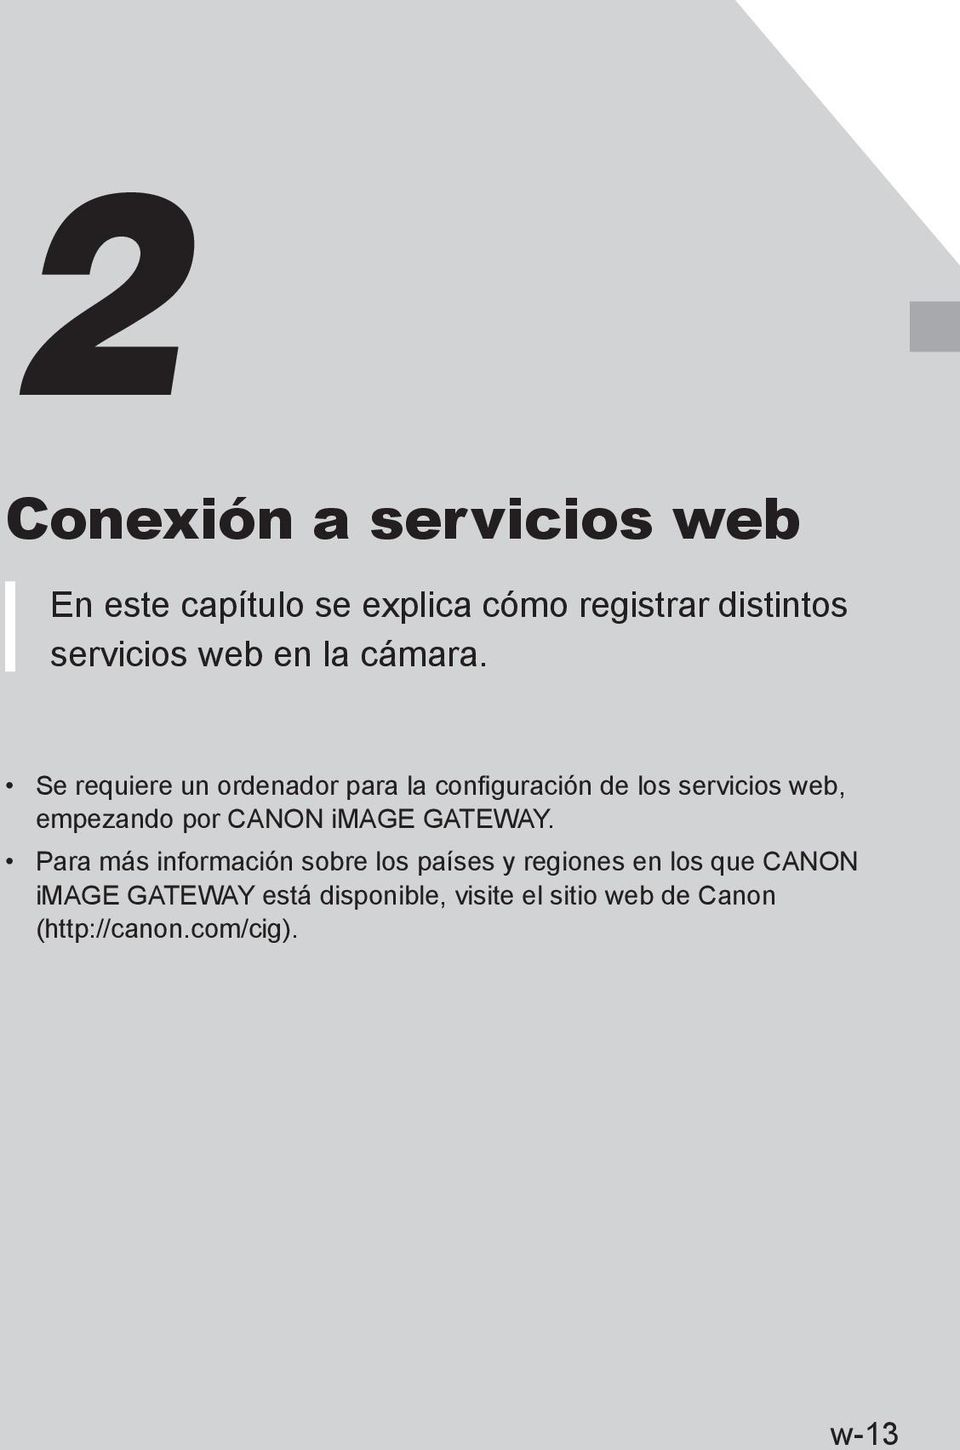 Se requiere un ordenador para la configuración de los servicios web, empezando por CANON